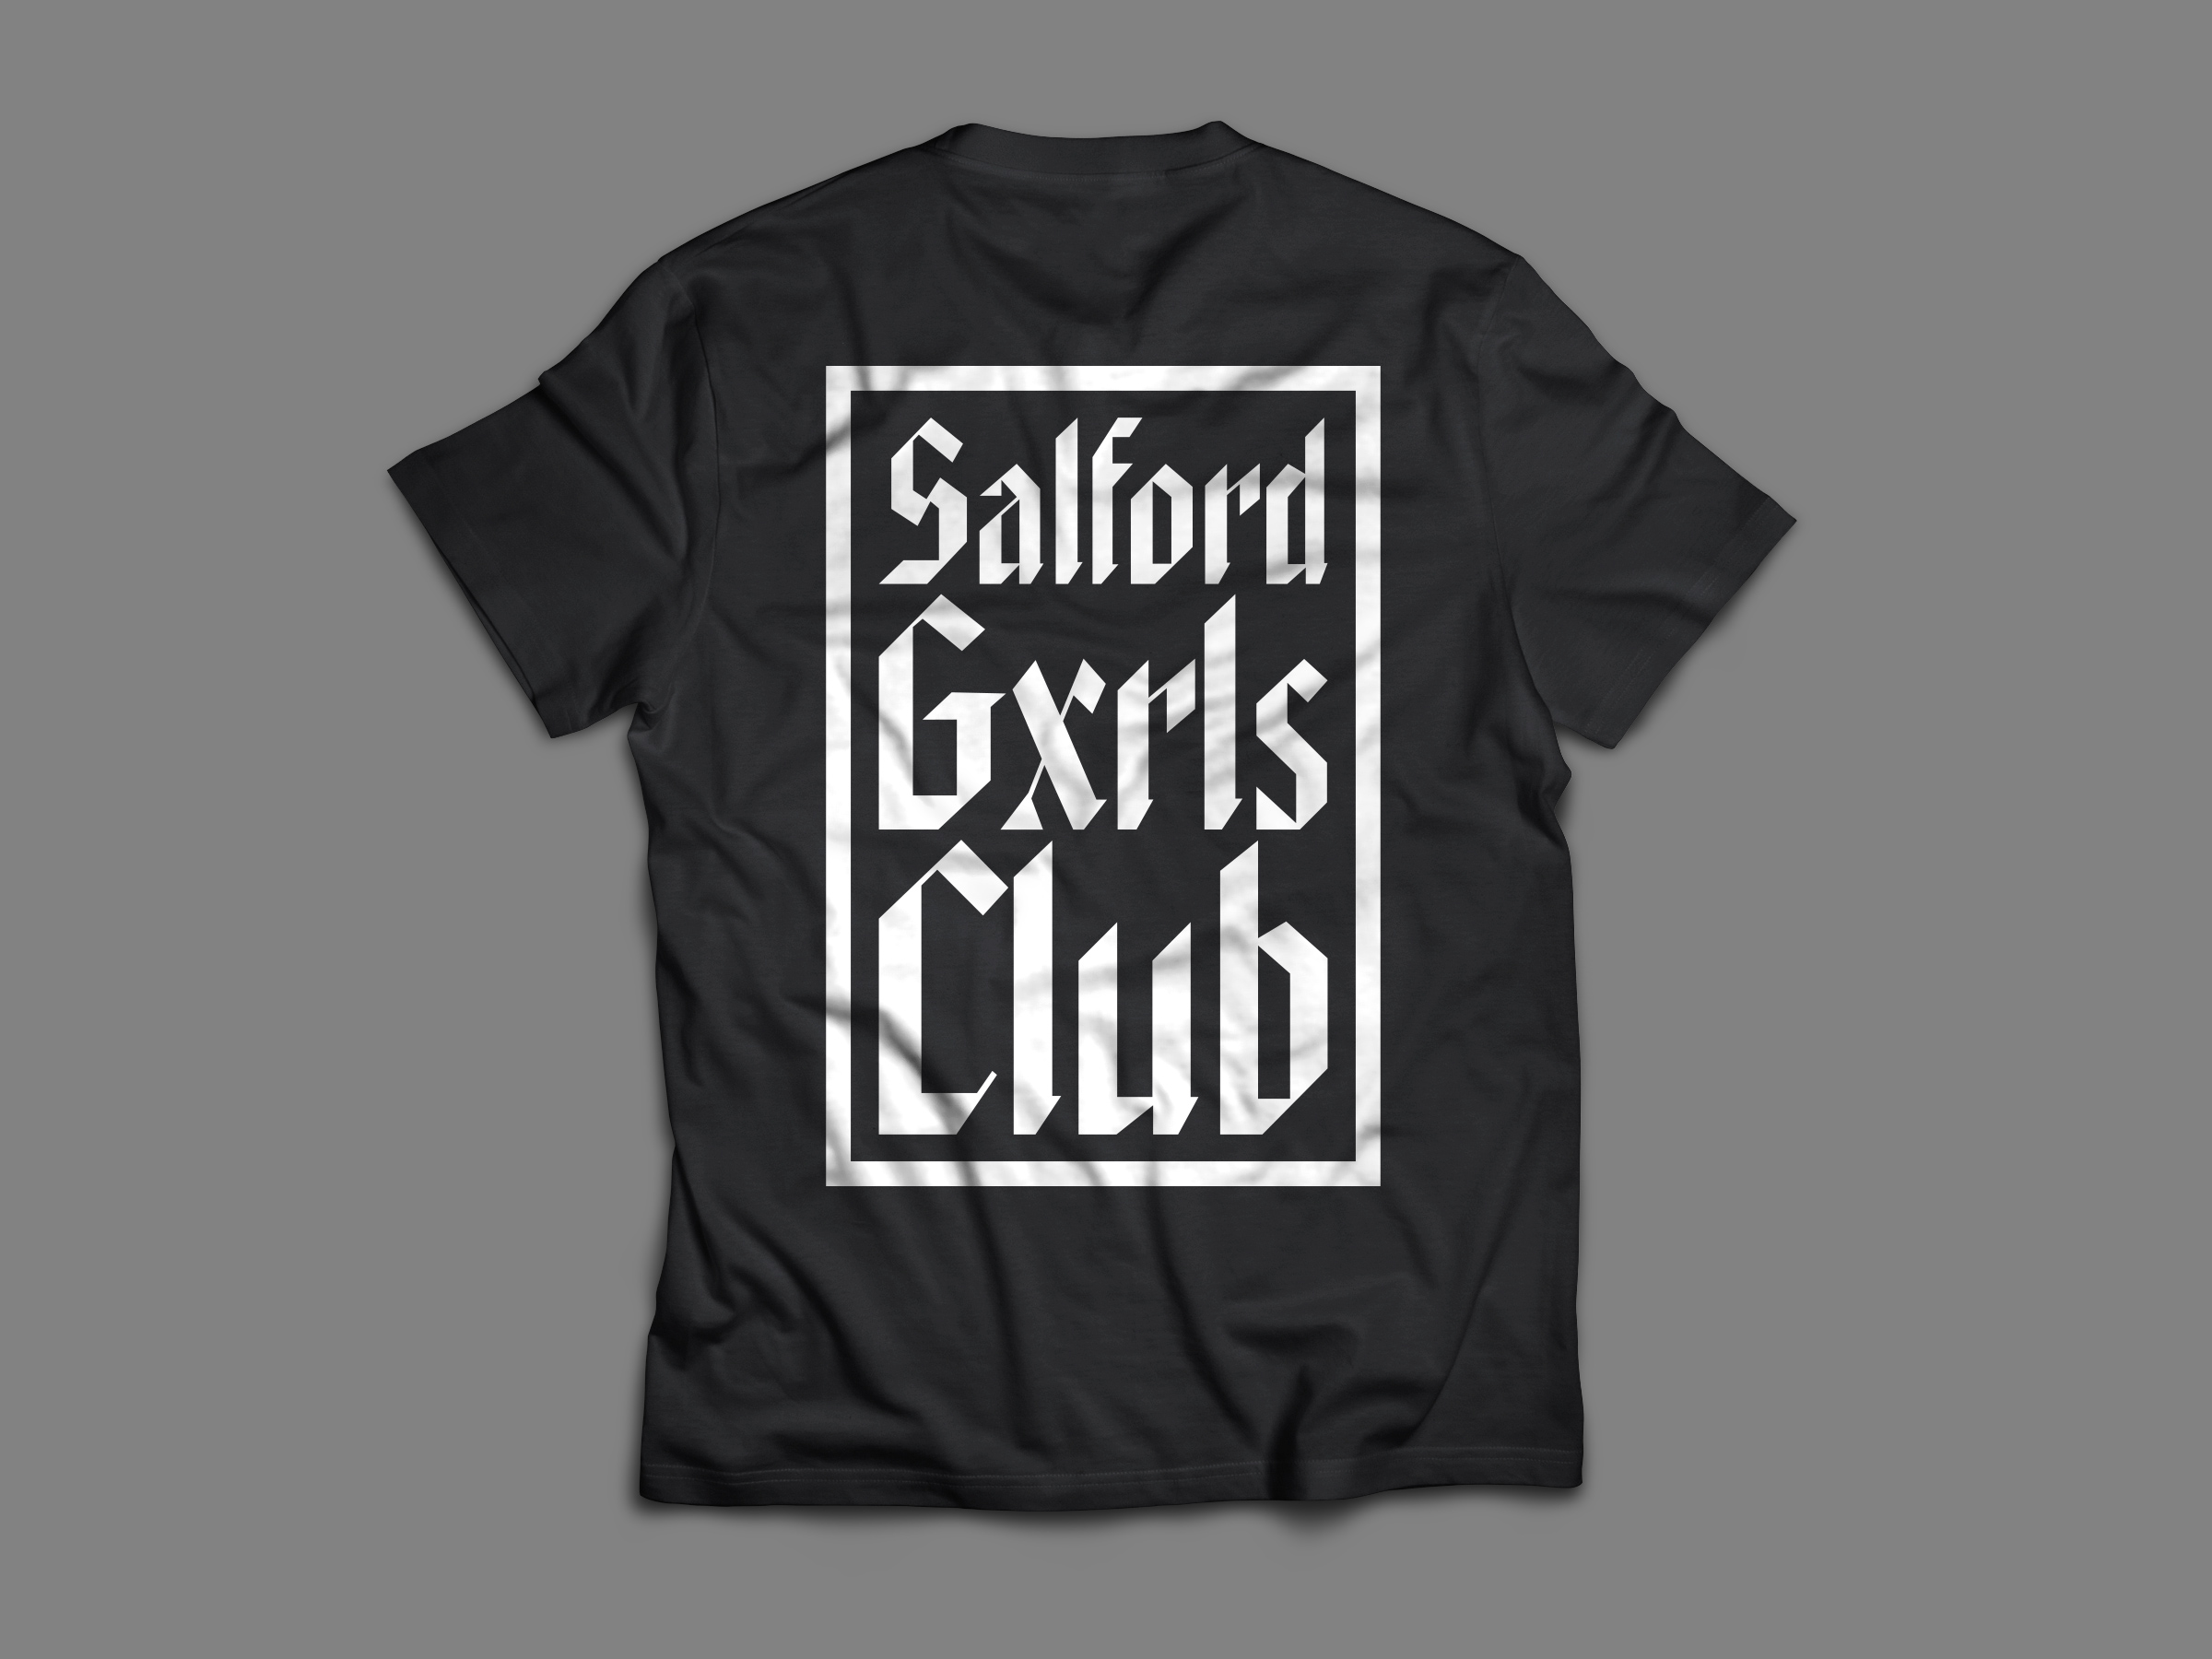 Salford Gxrls Club Clothing Drop – Pre-Order 2021